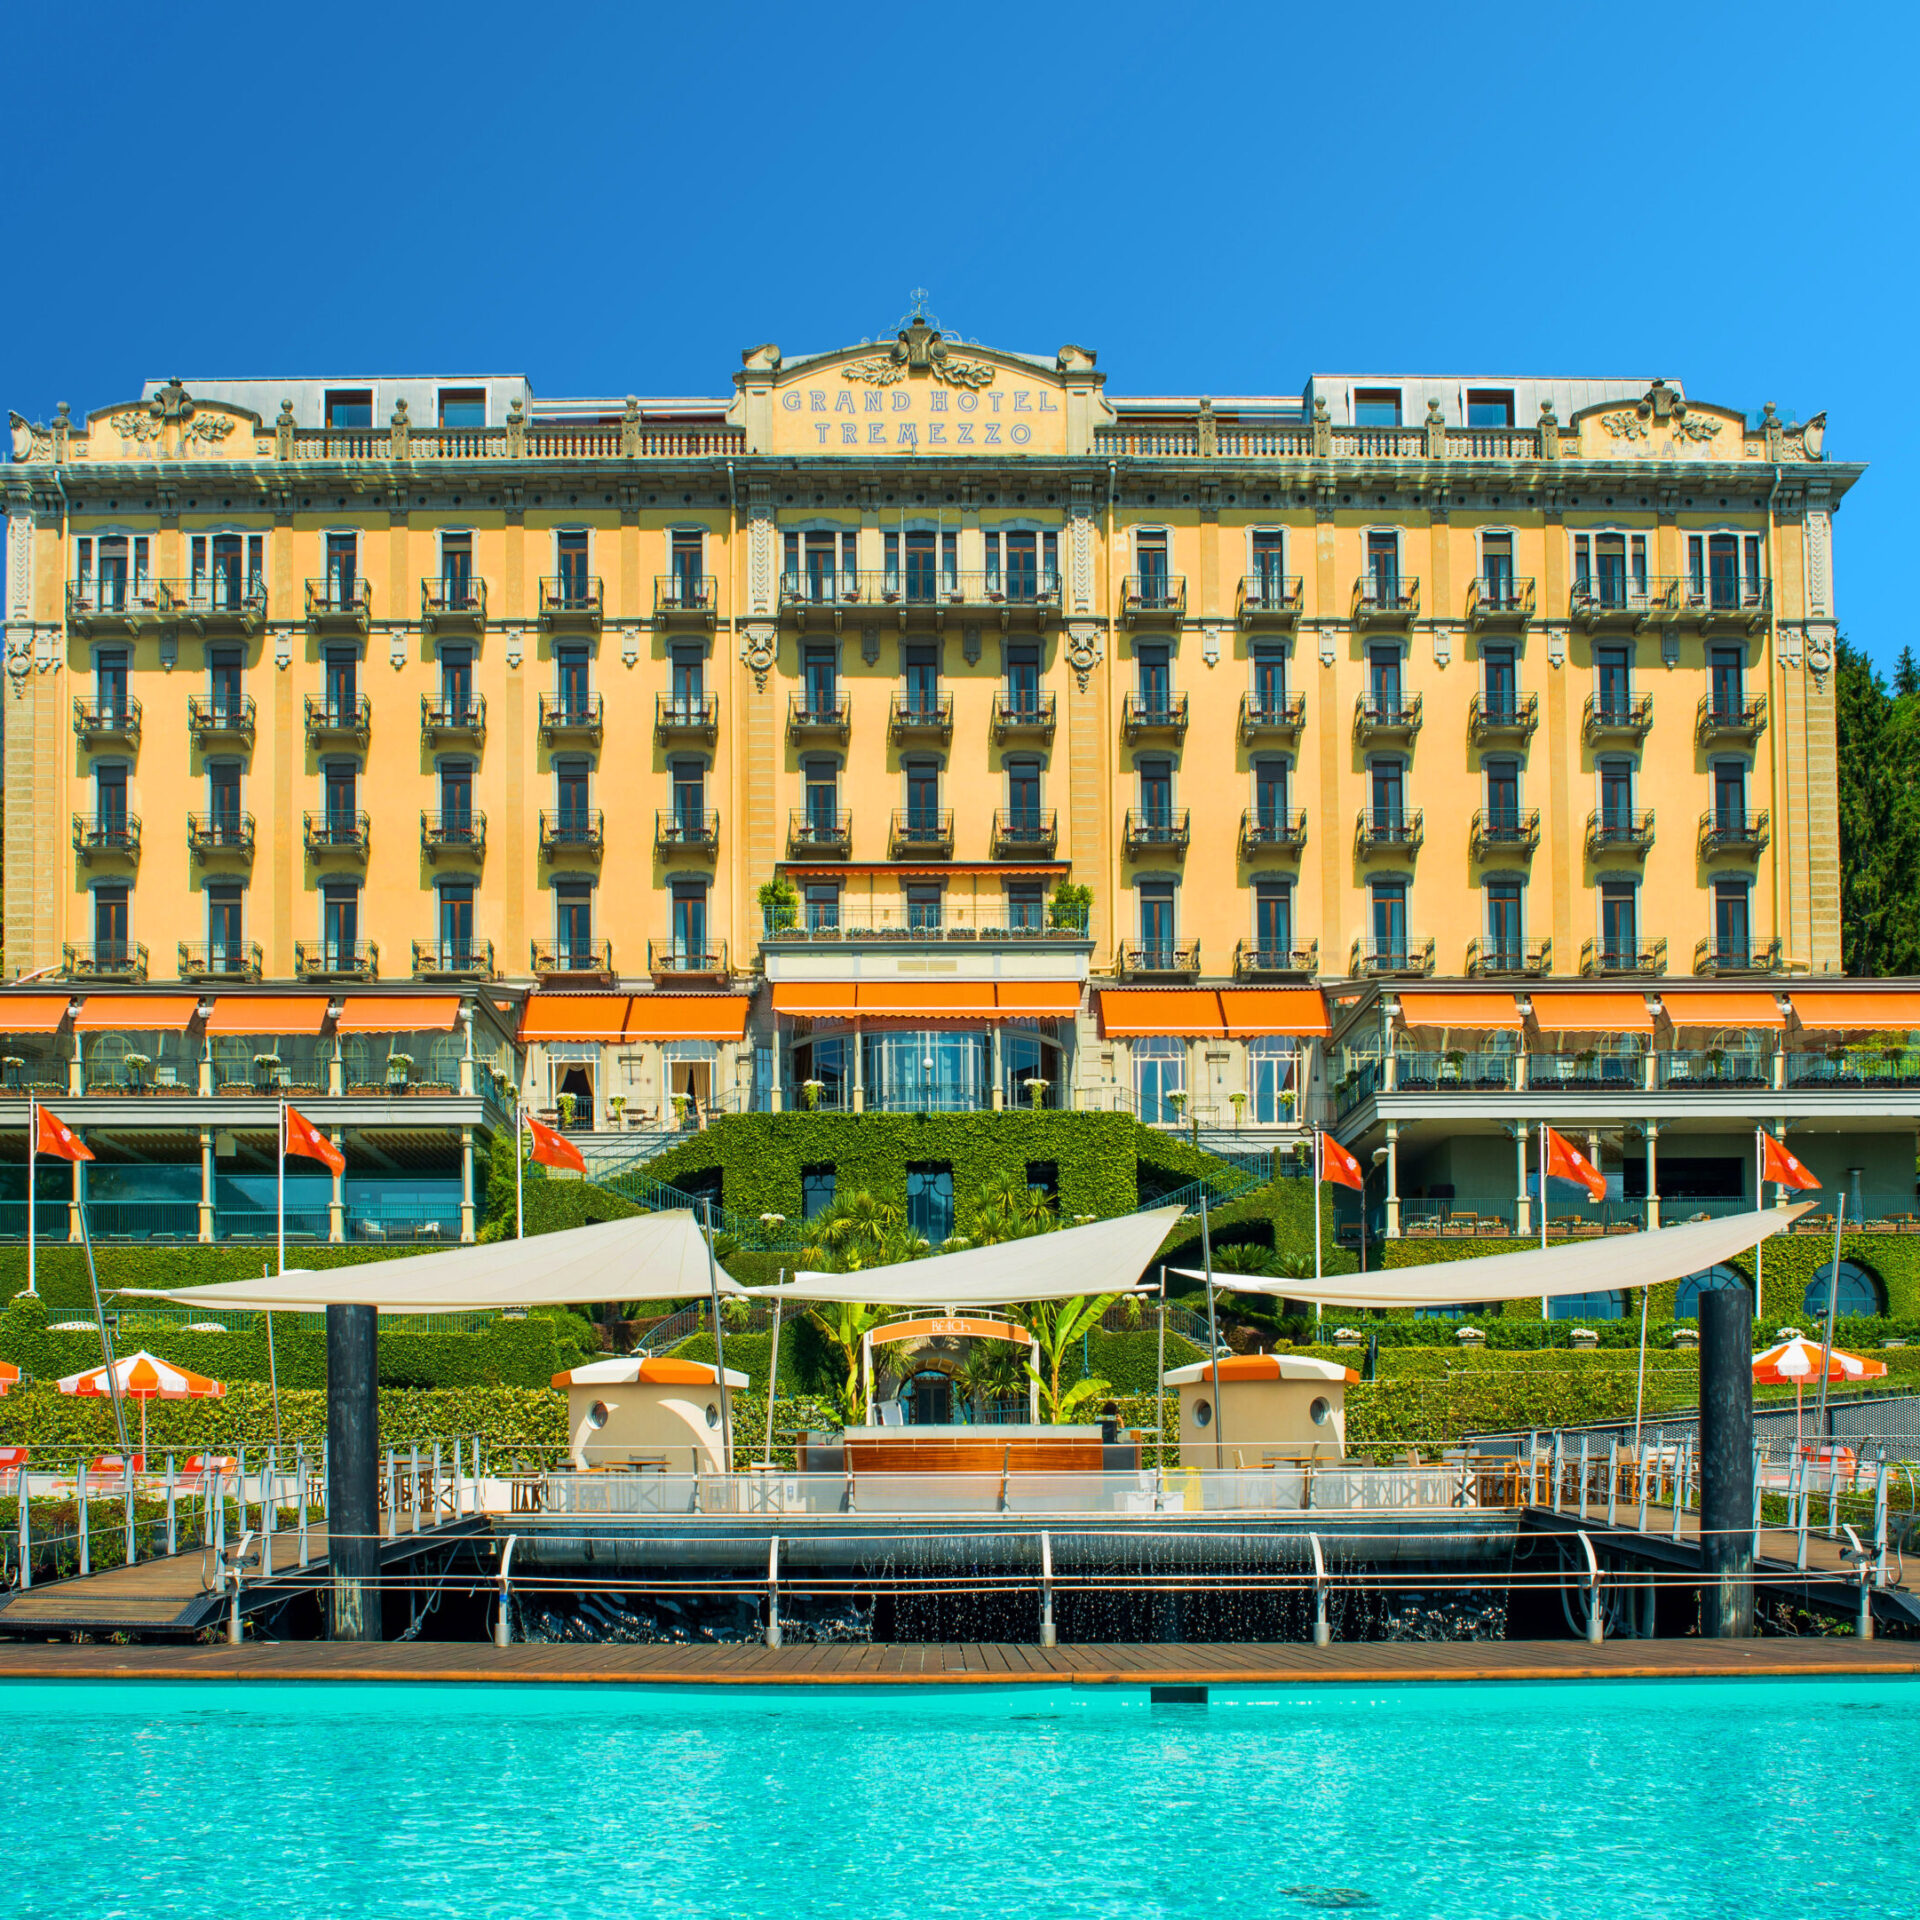 0 - Grand Hotel Tremezzo Facade